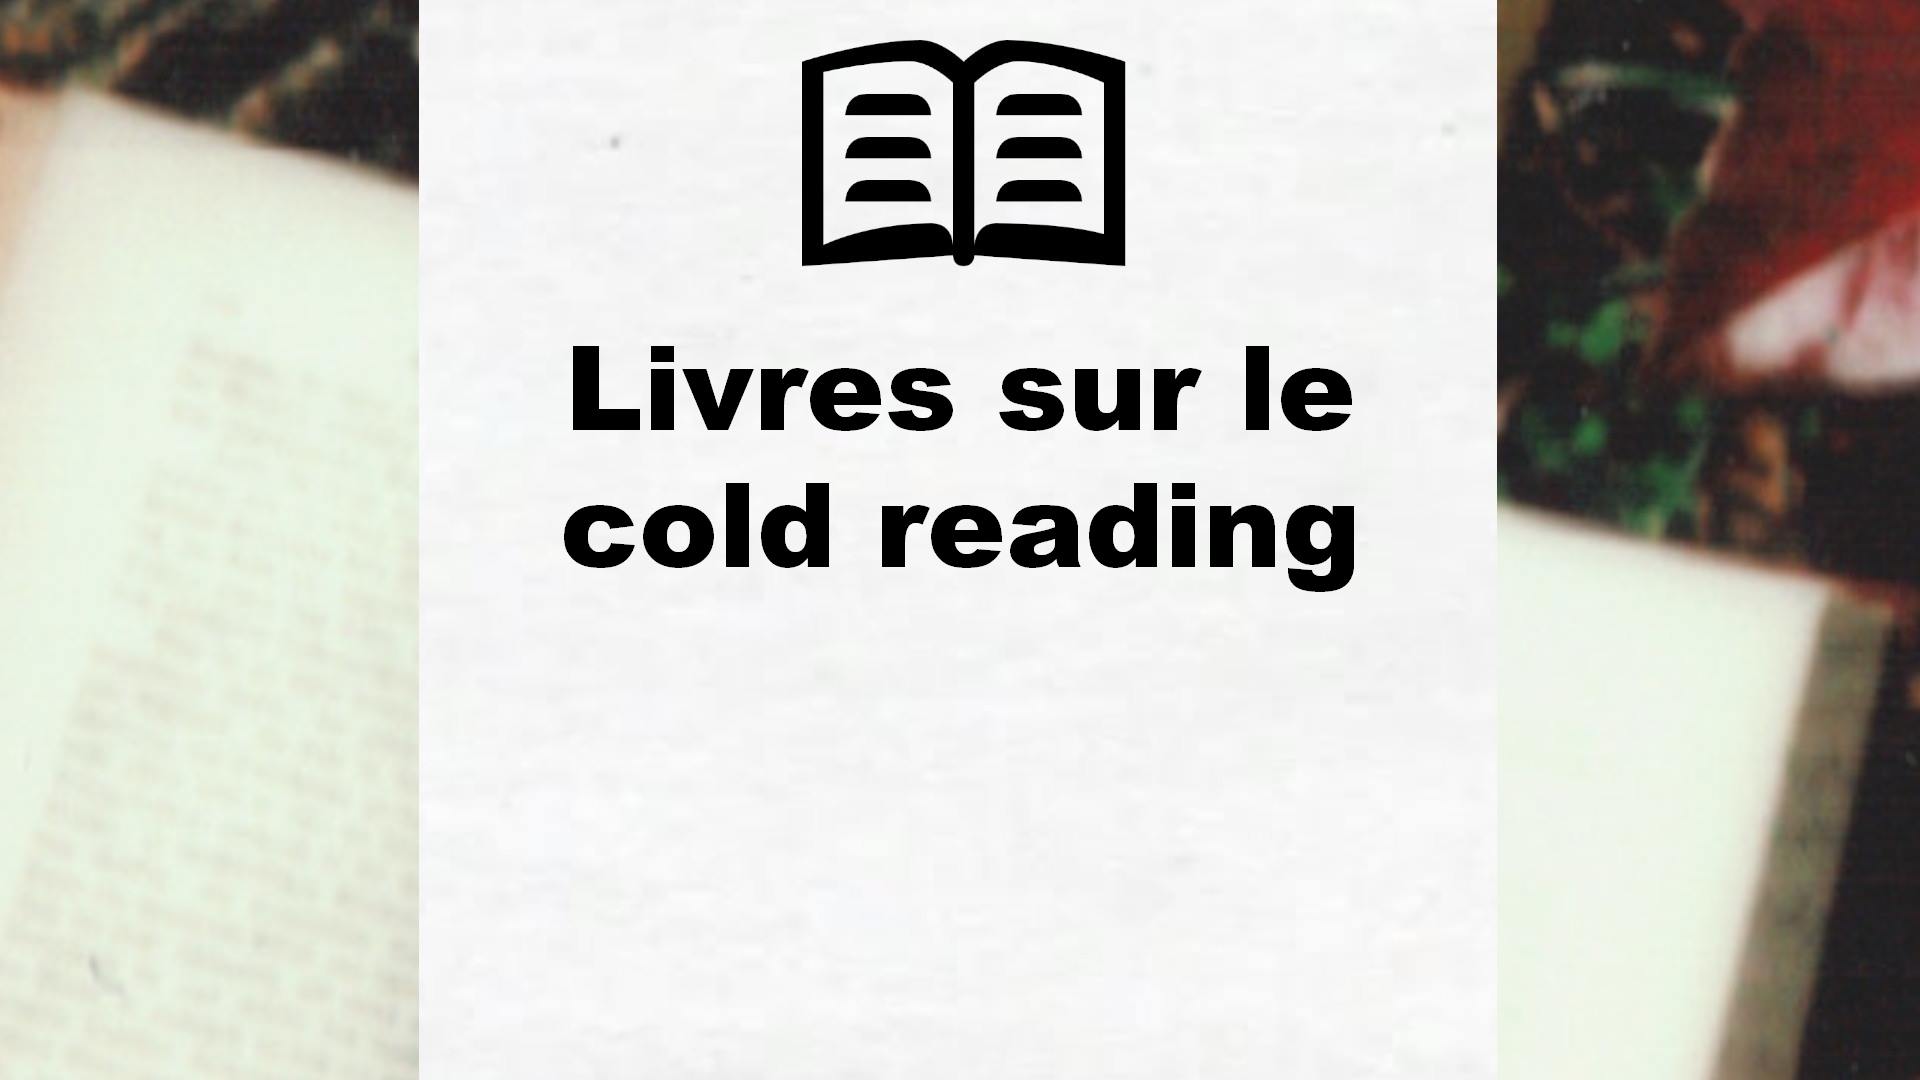 Livres sur le cold reading